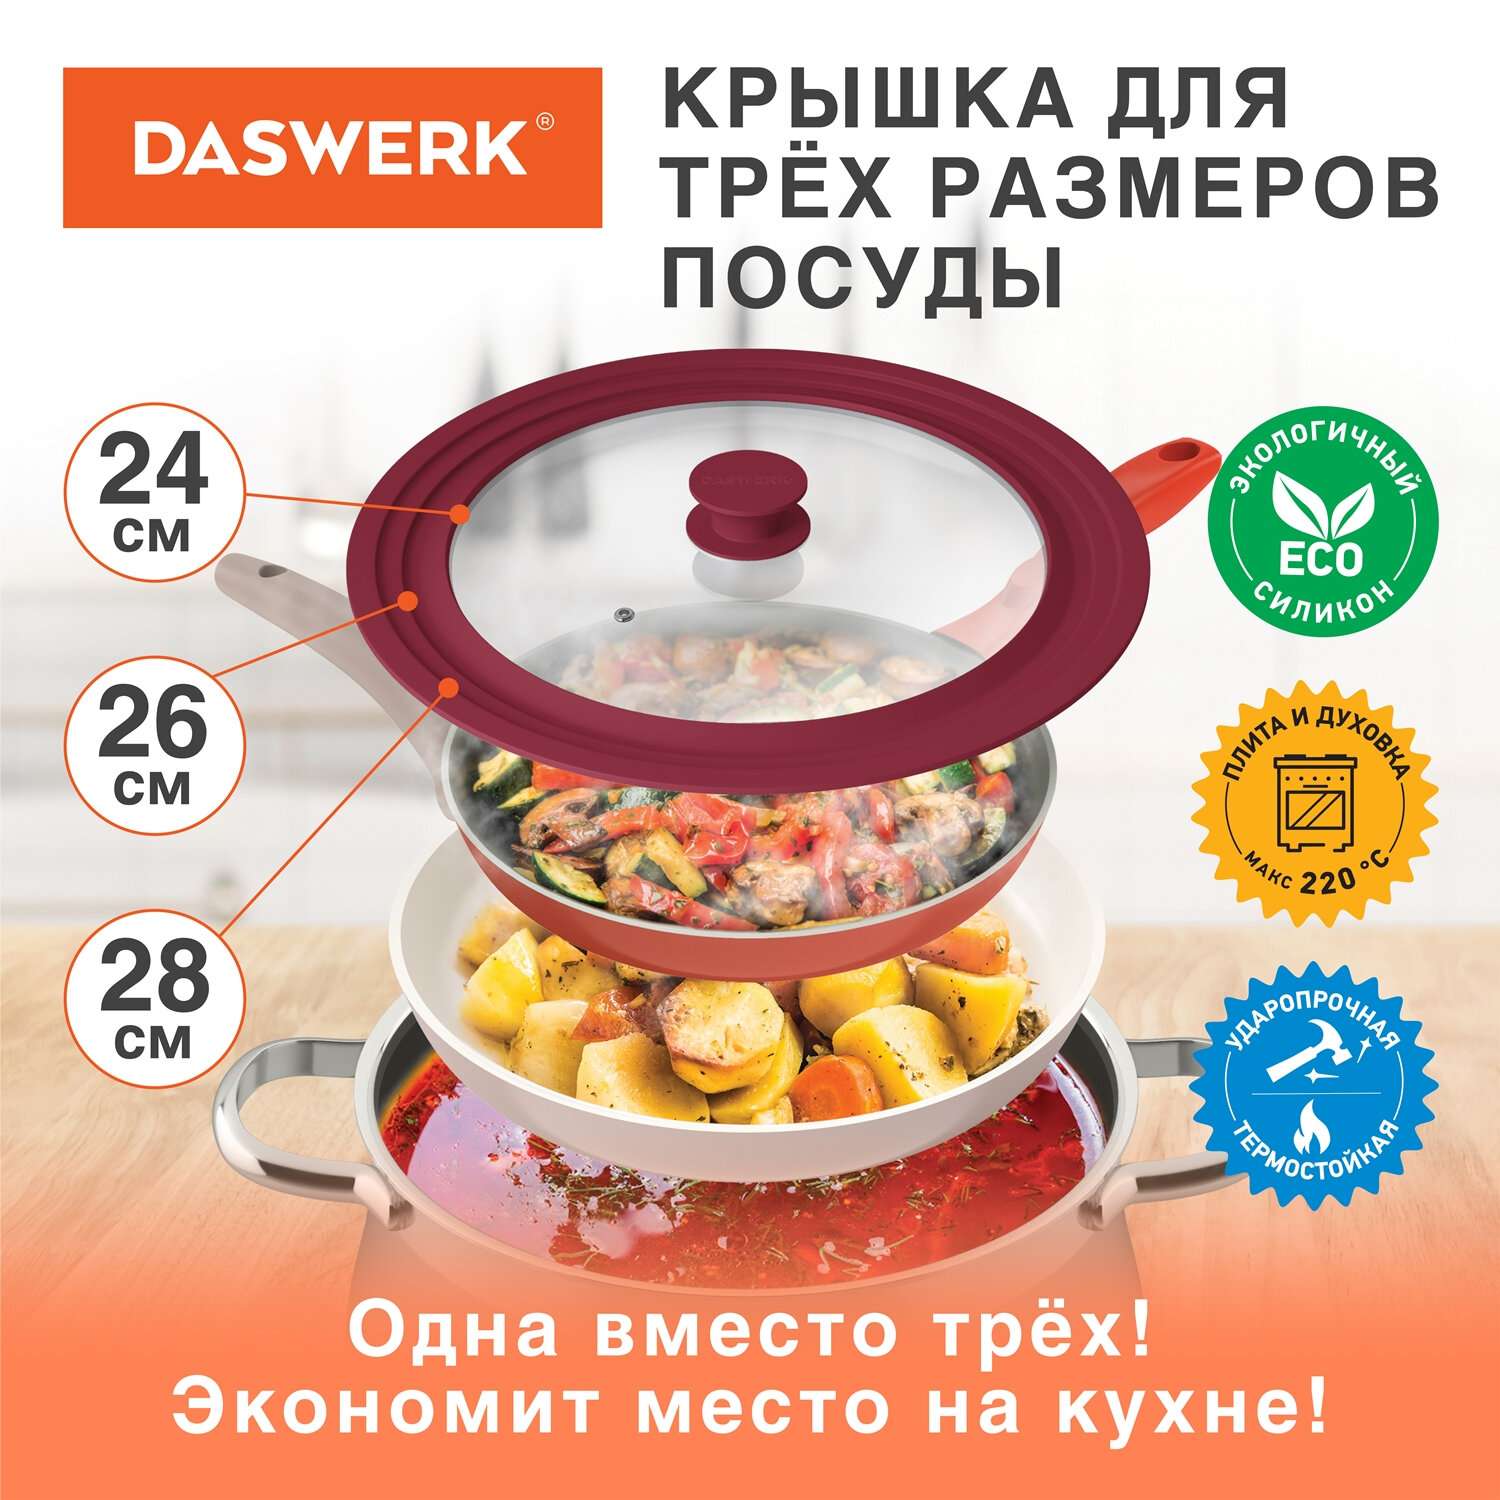 Крышка для сковороды DASWERK кастрюли посуды универсальная 3 размера 24-26-28см - фото 2